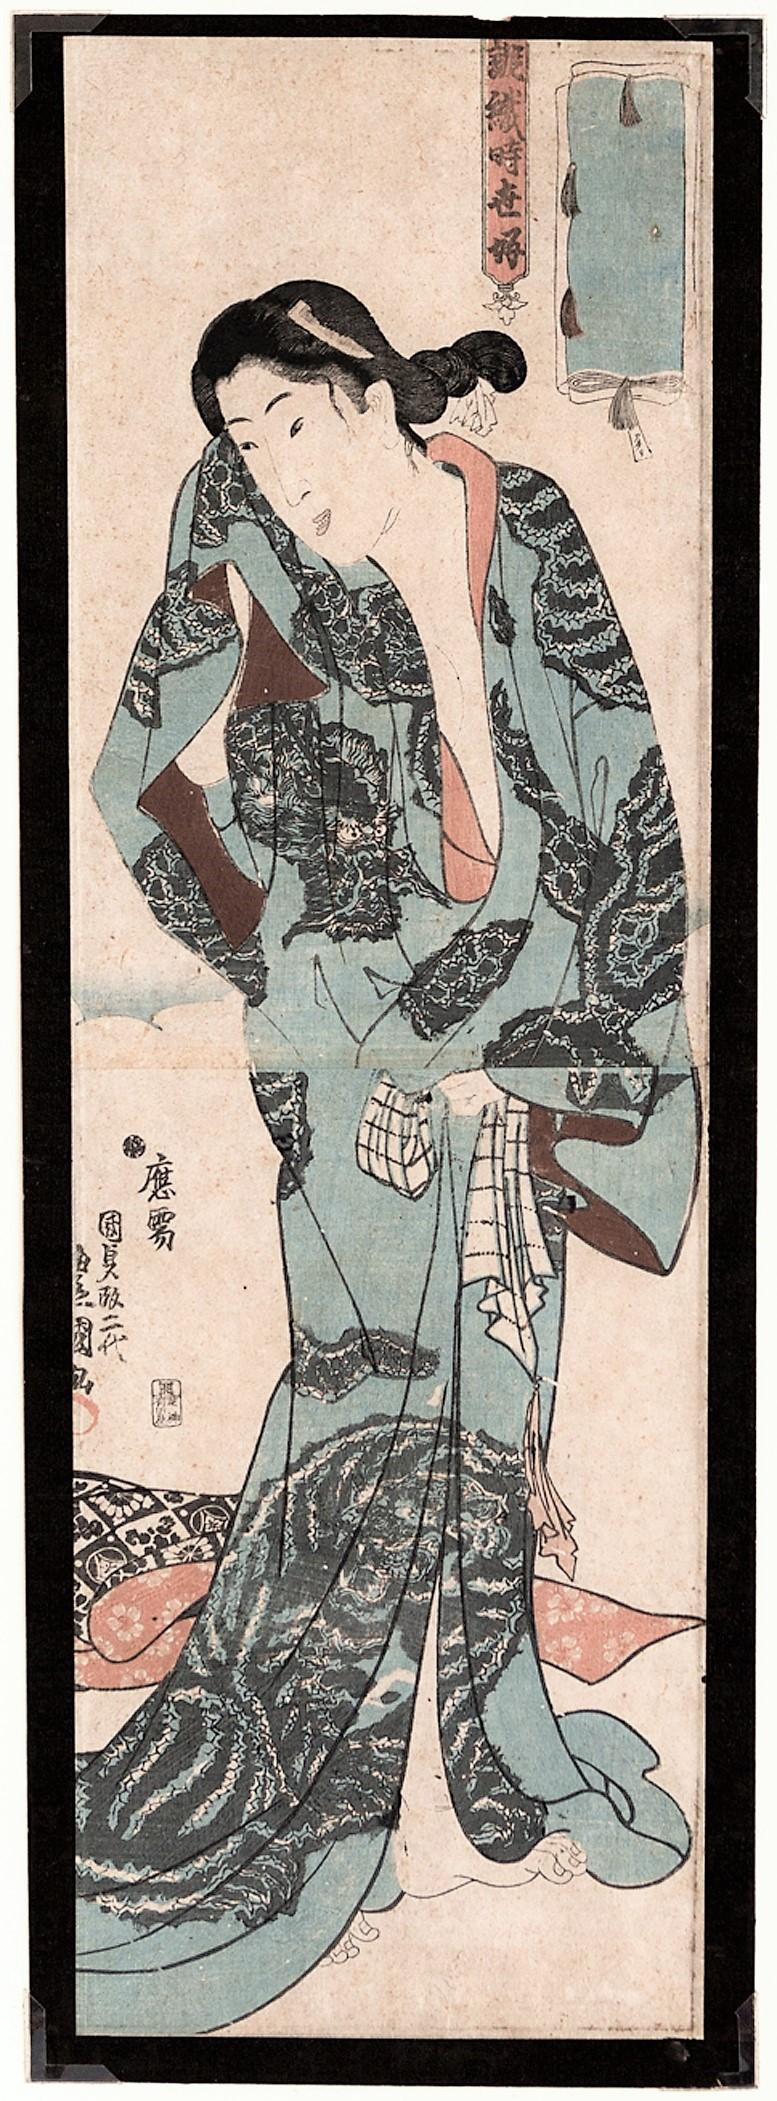 [After the Bath] - Print by Utagawa Kunisada (Toyokuni III)